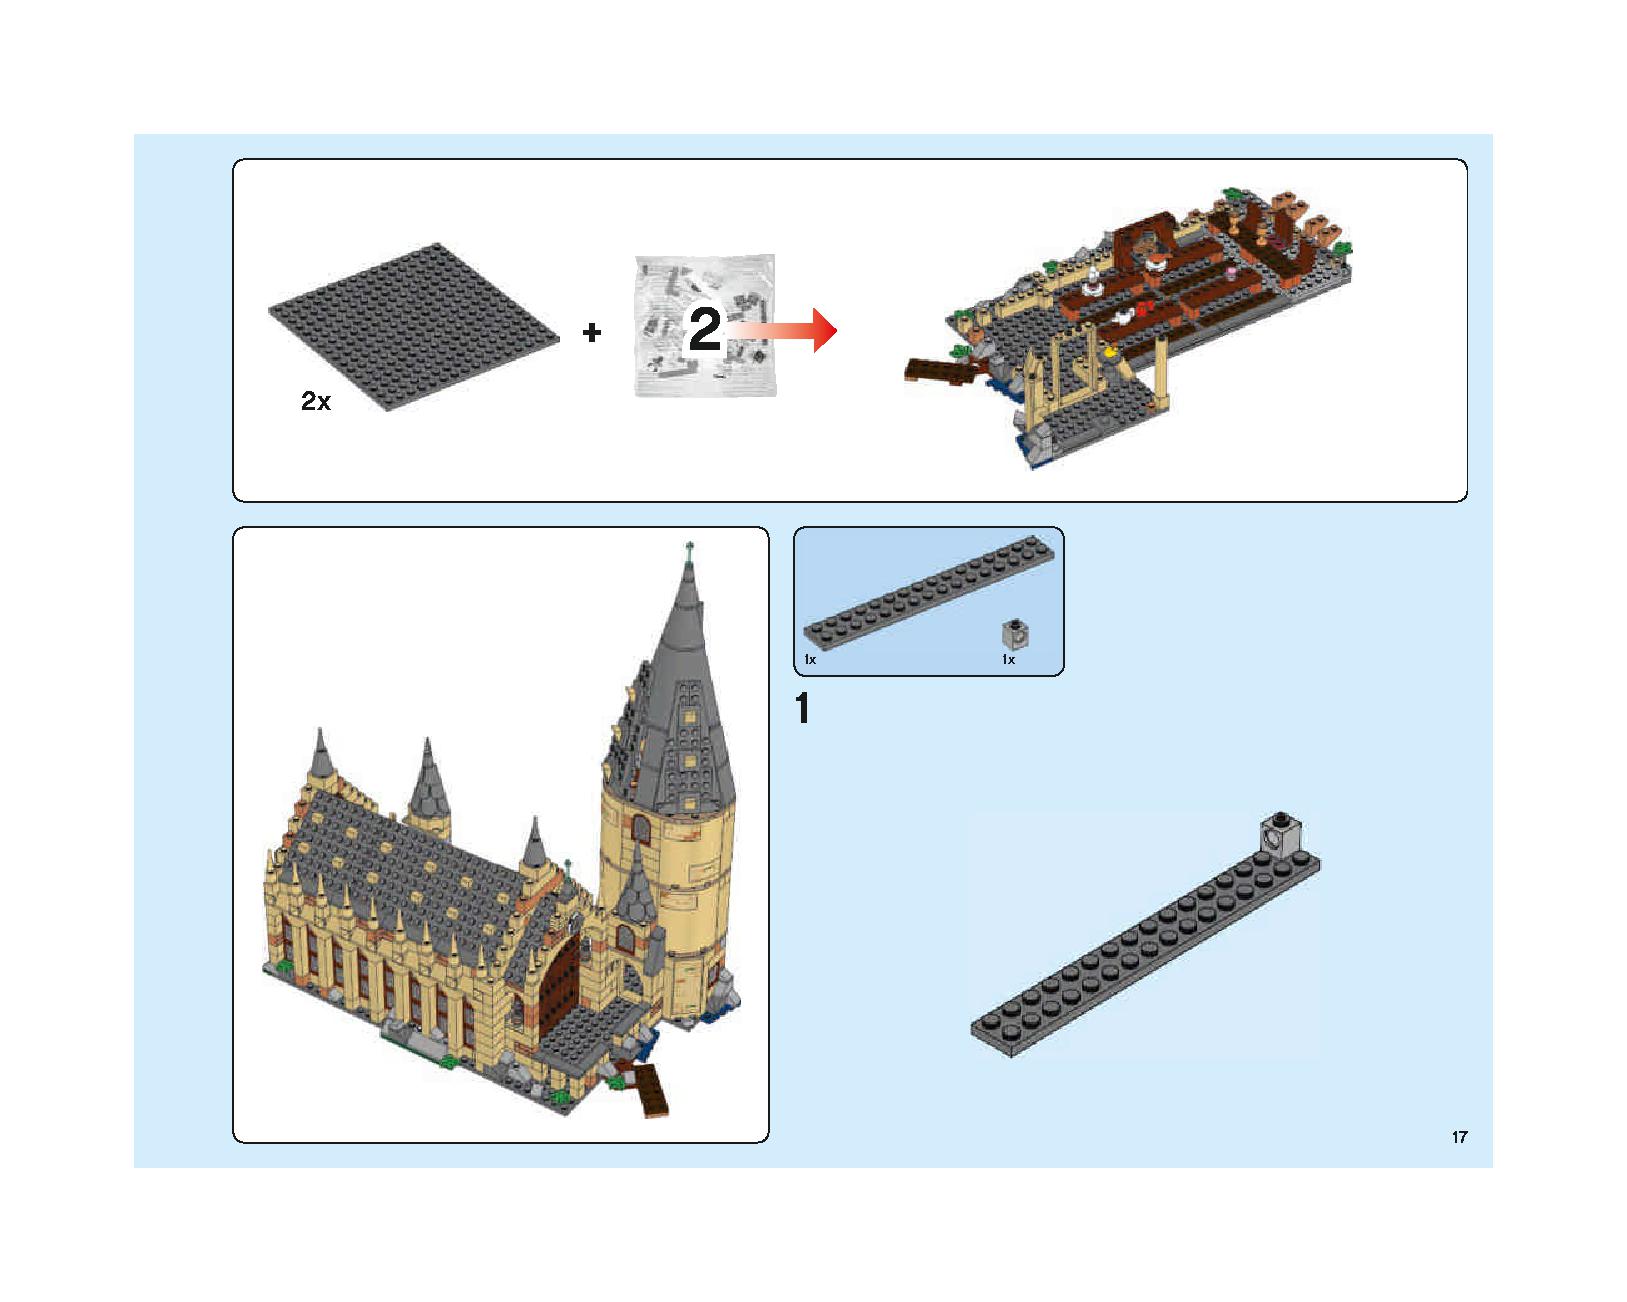 ホグワーツの大広間 75954 レゴの商品情報 レゴの説明書・組立方法 17 page